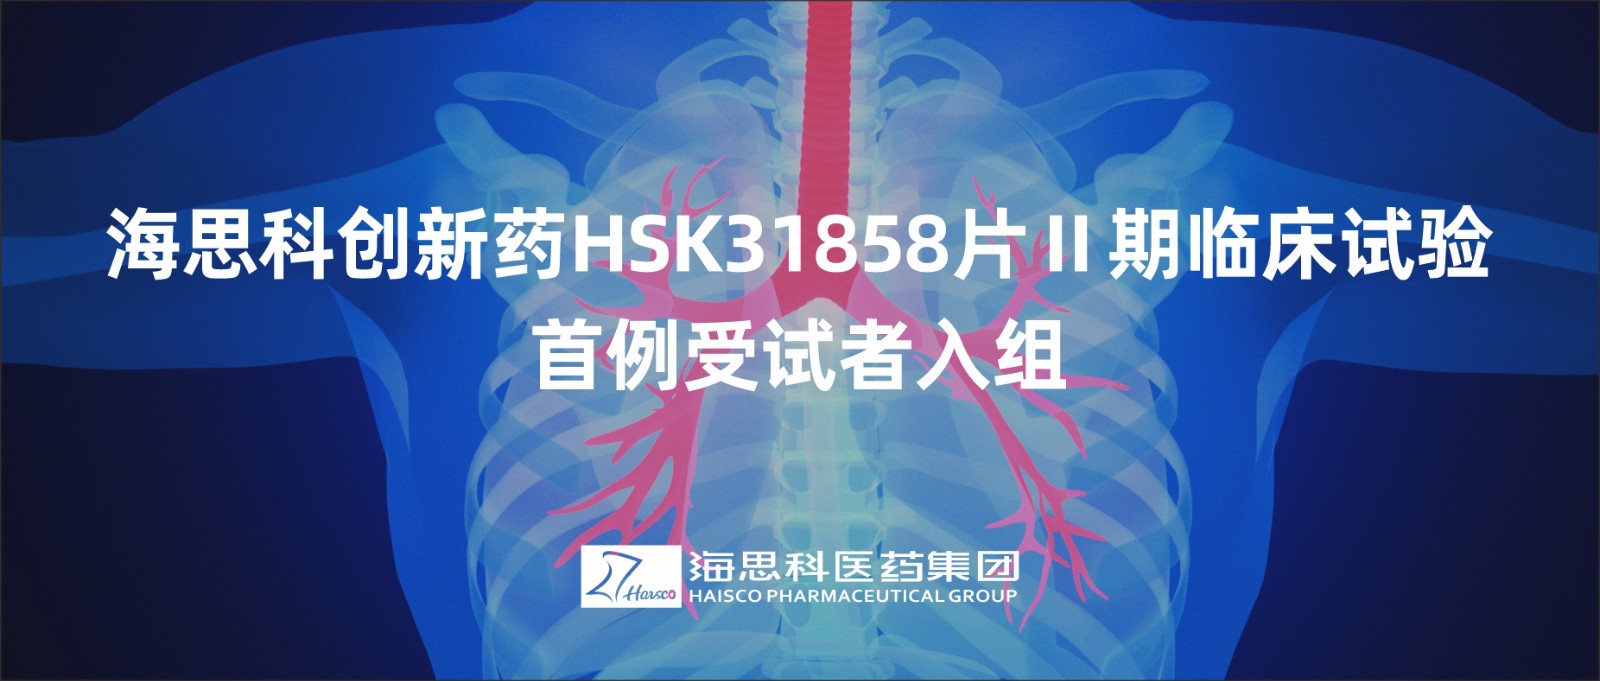 海思科創新藥HSK31858片Ⅱ期臨床試驗首例受試者入組